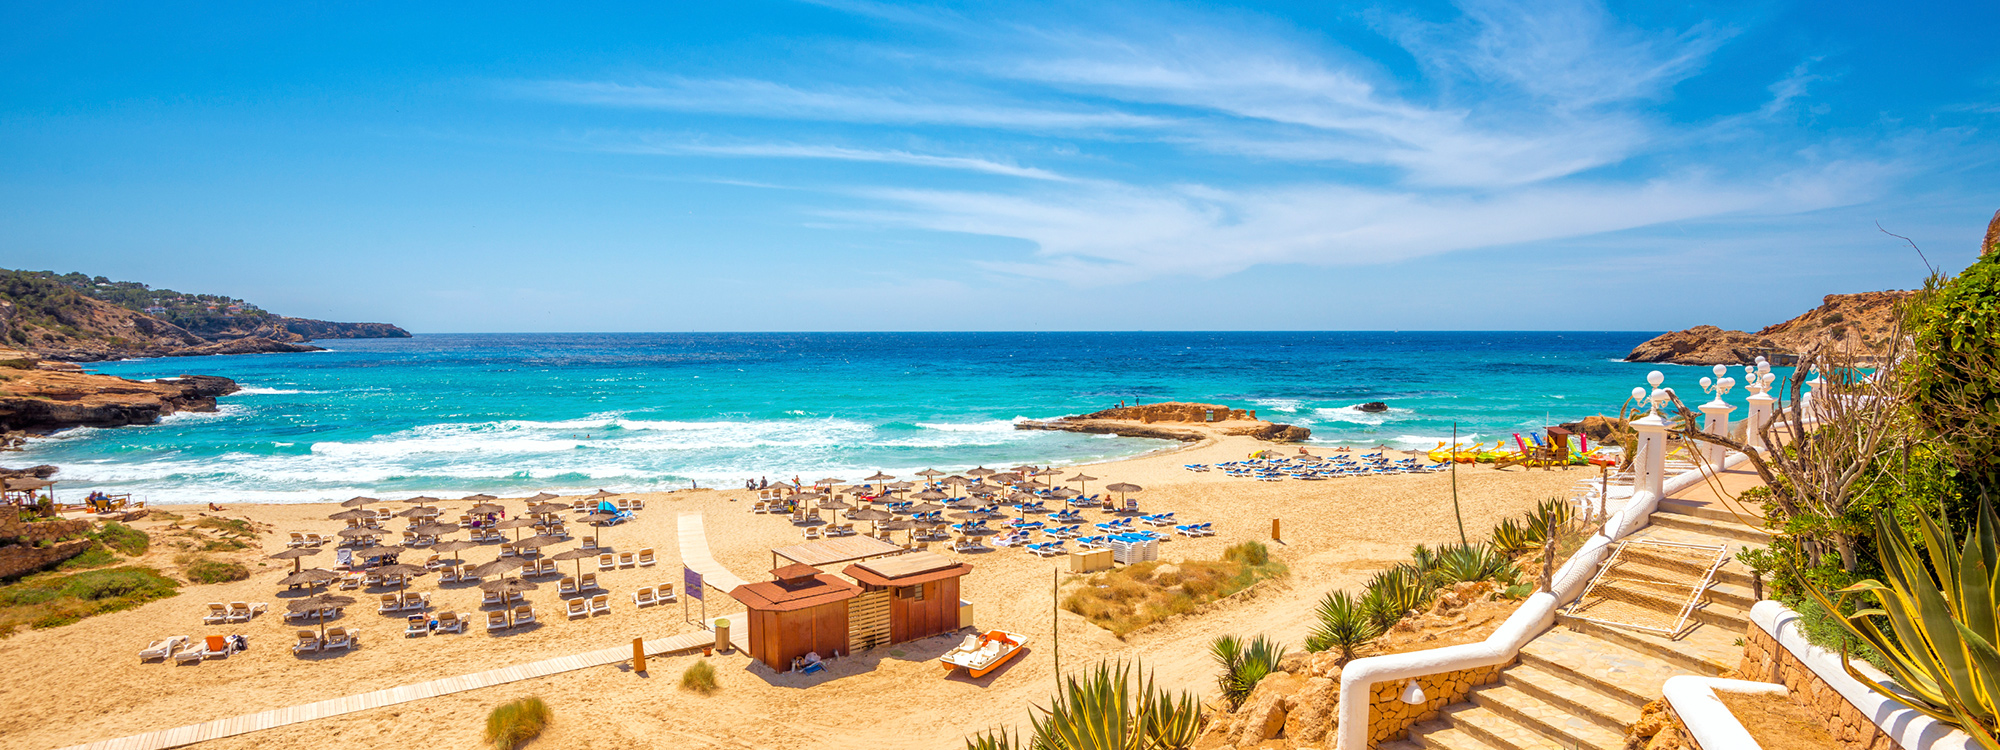 Ibiza, Hotel Cala Martina Punta Arabi vom 2022-10-06 bis 2022-10-13 für 507 EUR p.P.